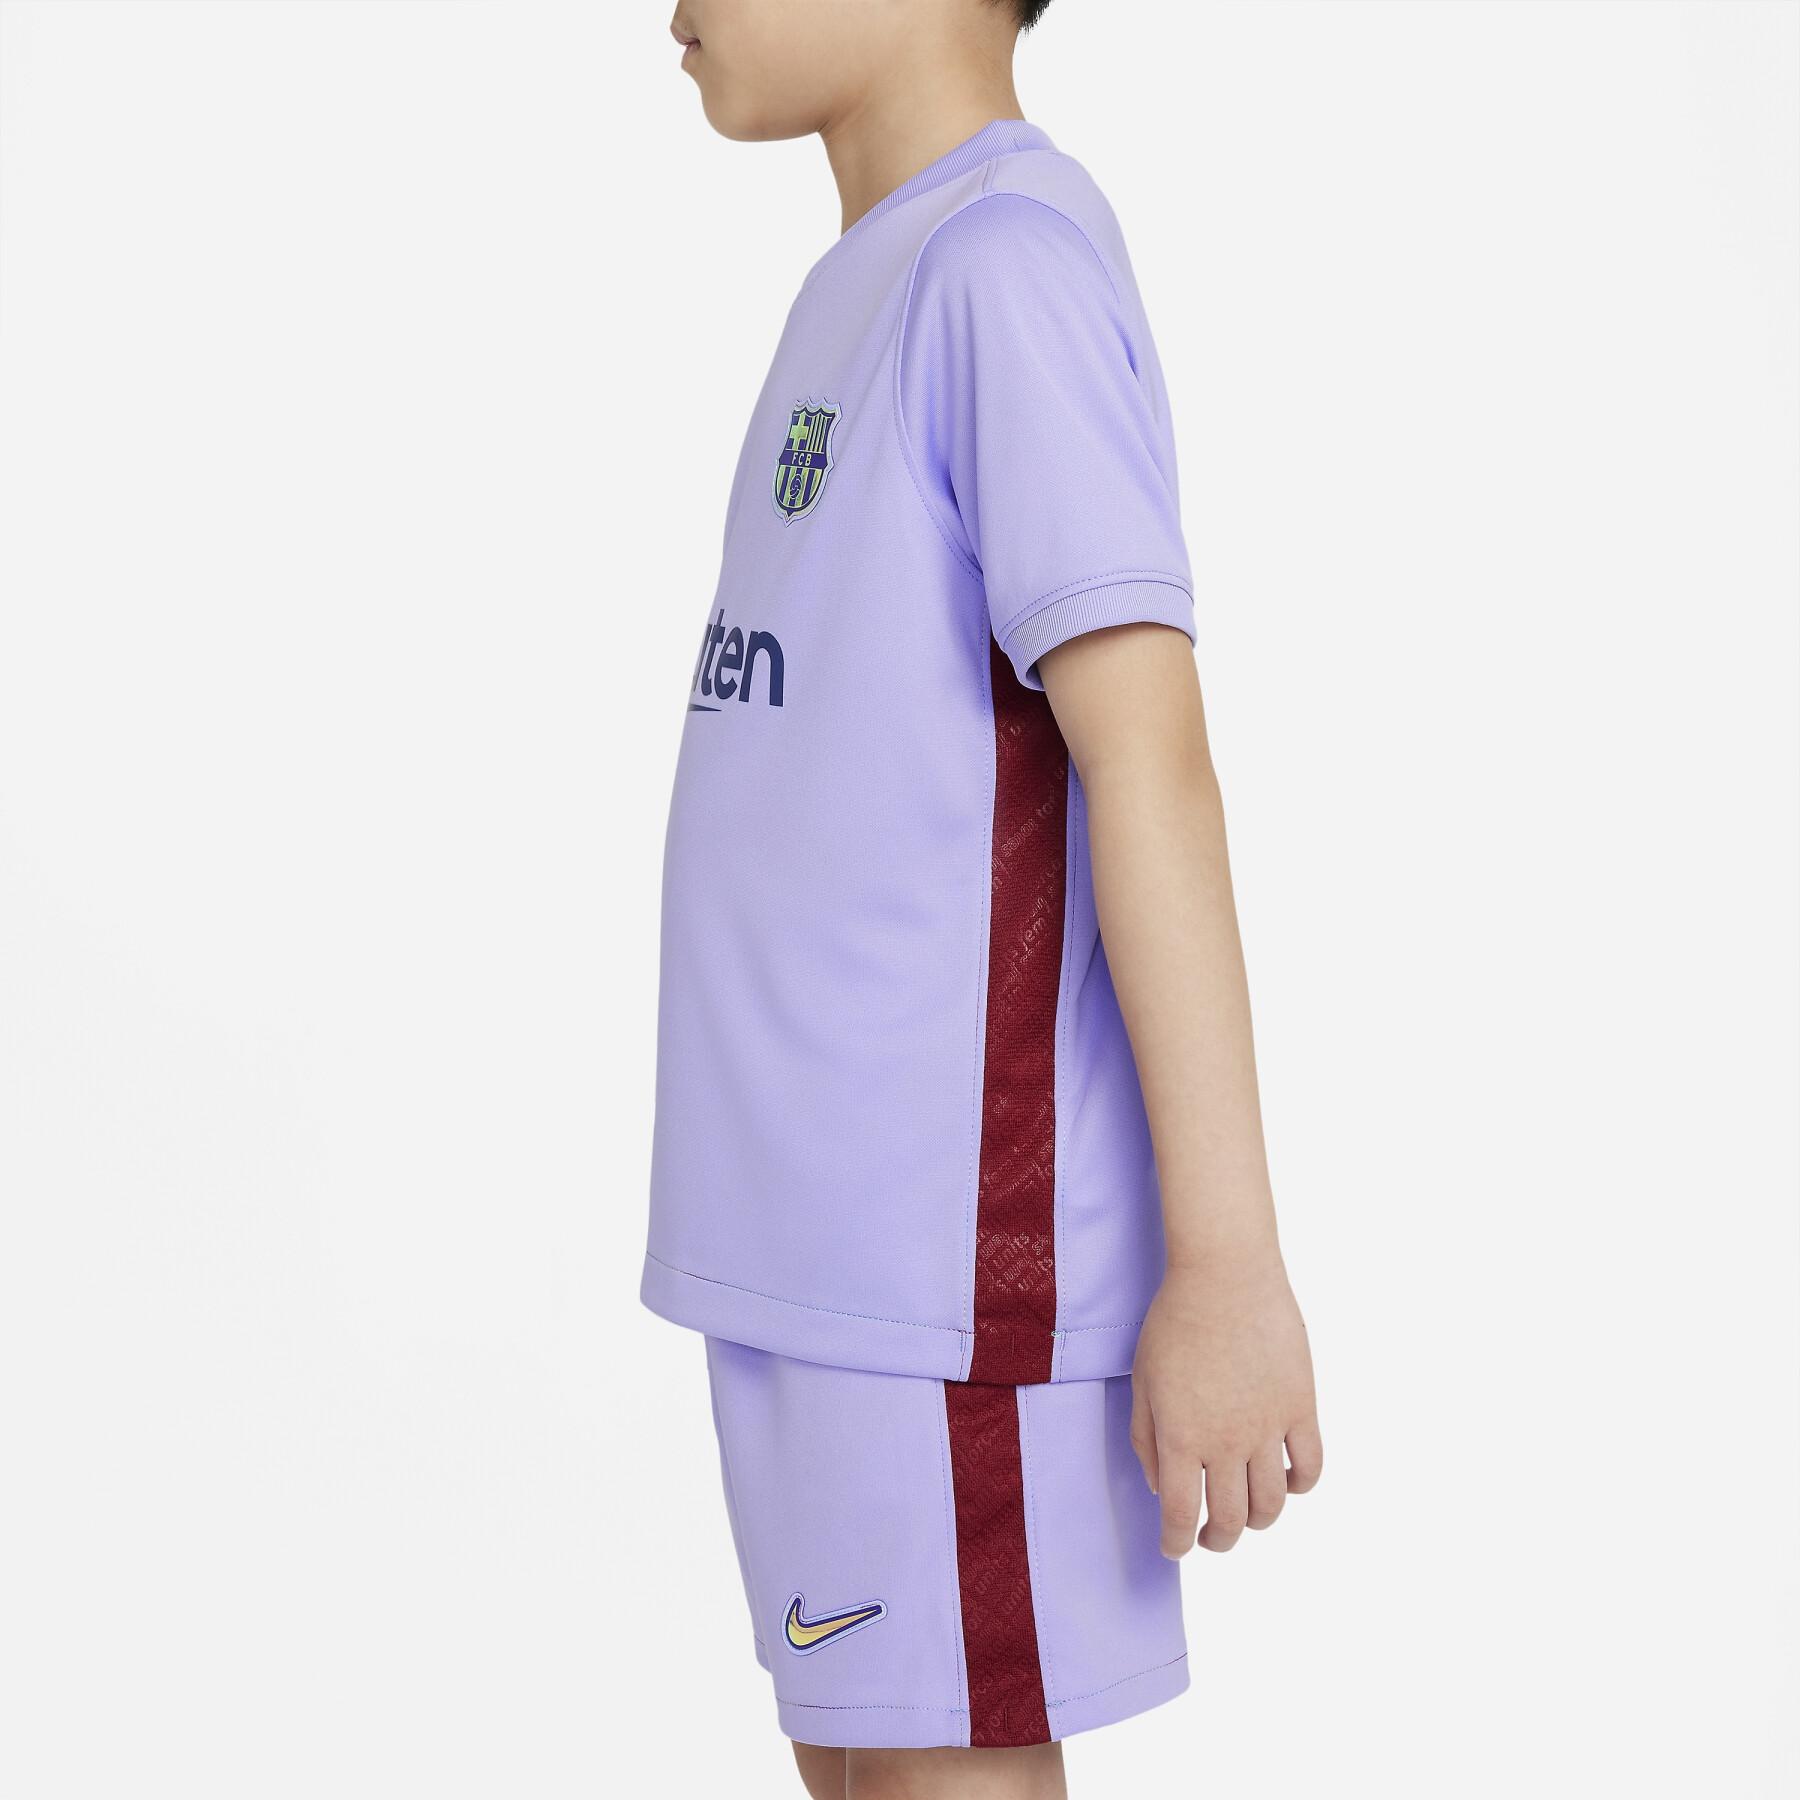 Mini kit all'aperto per bambini FC Barcelone 2021/22